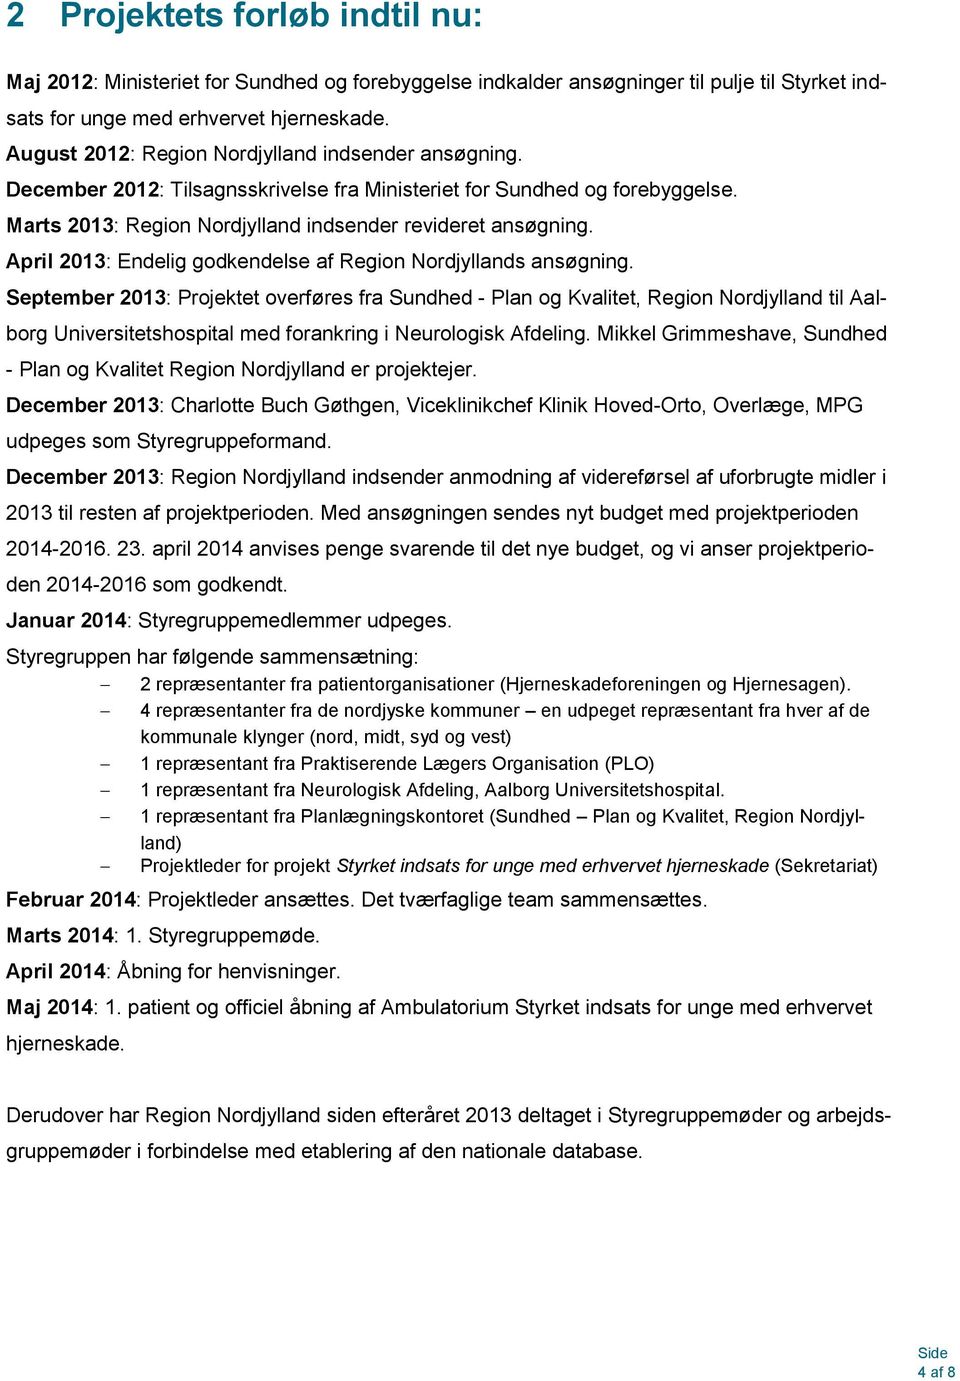 April 2013: Endelig godkendelse af Region Nordjyllands ansøgning.